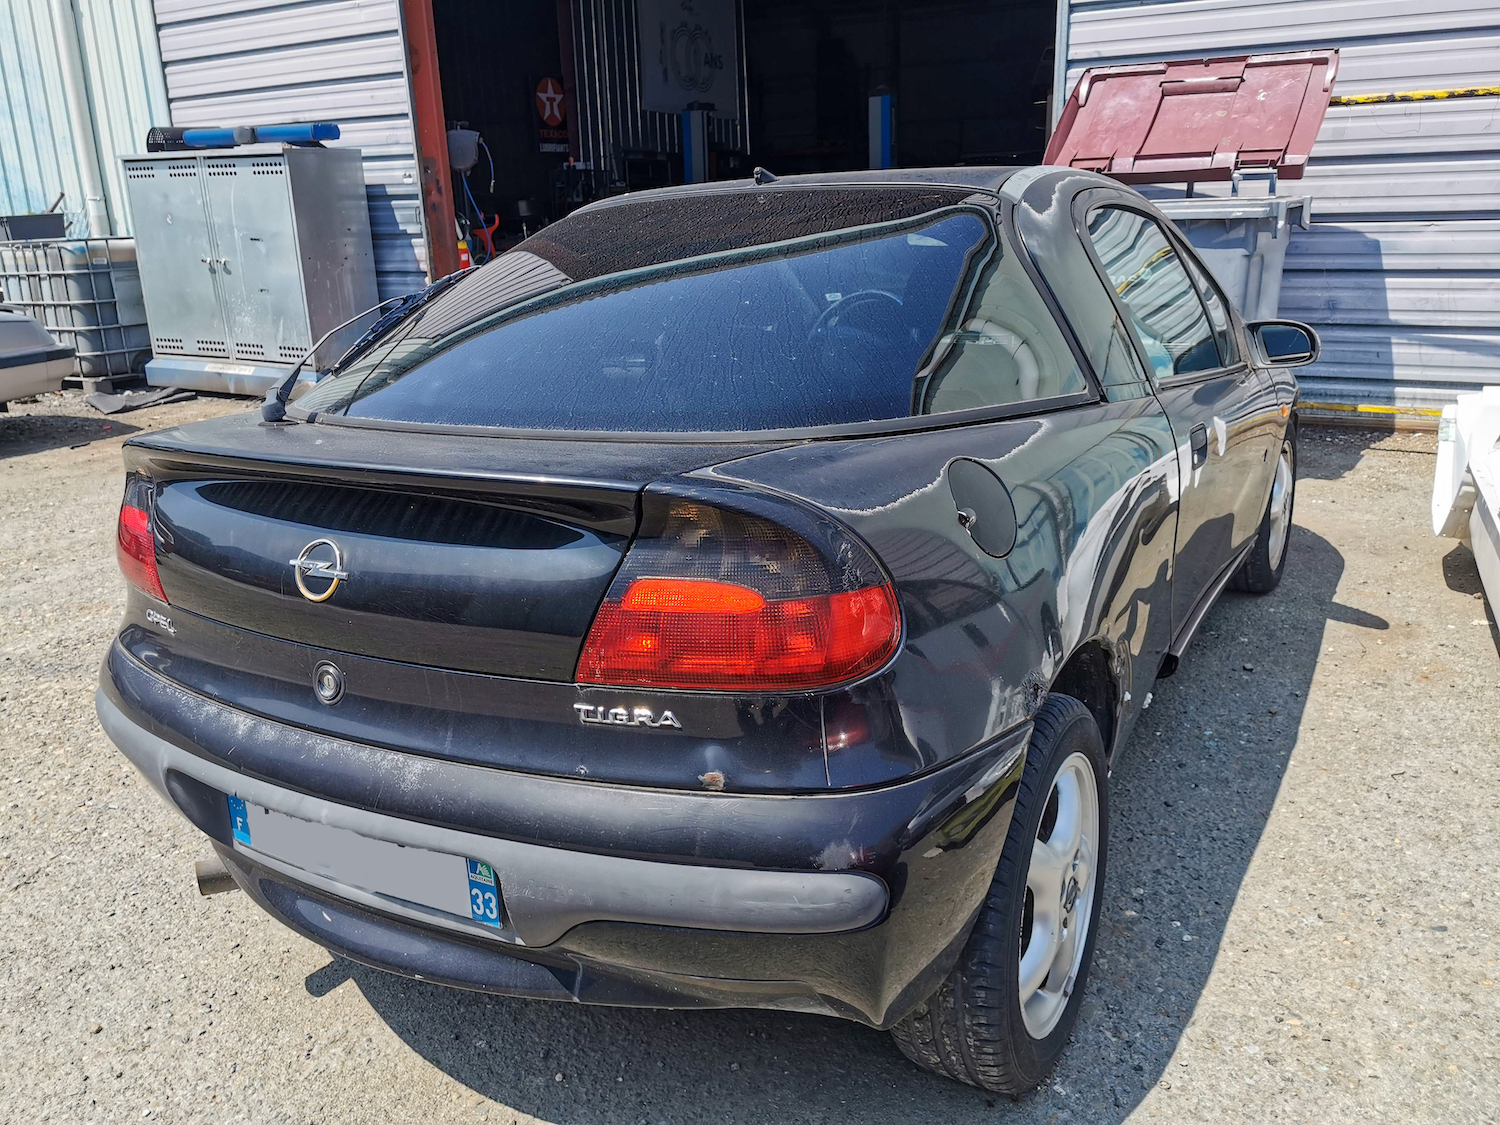 A VENDRE Opel Tigra de 1997 à rénover